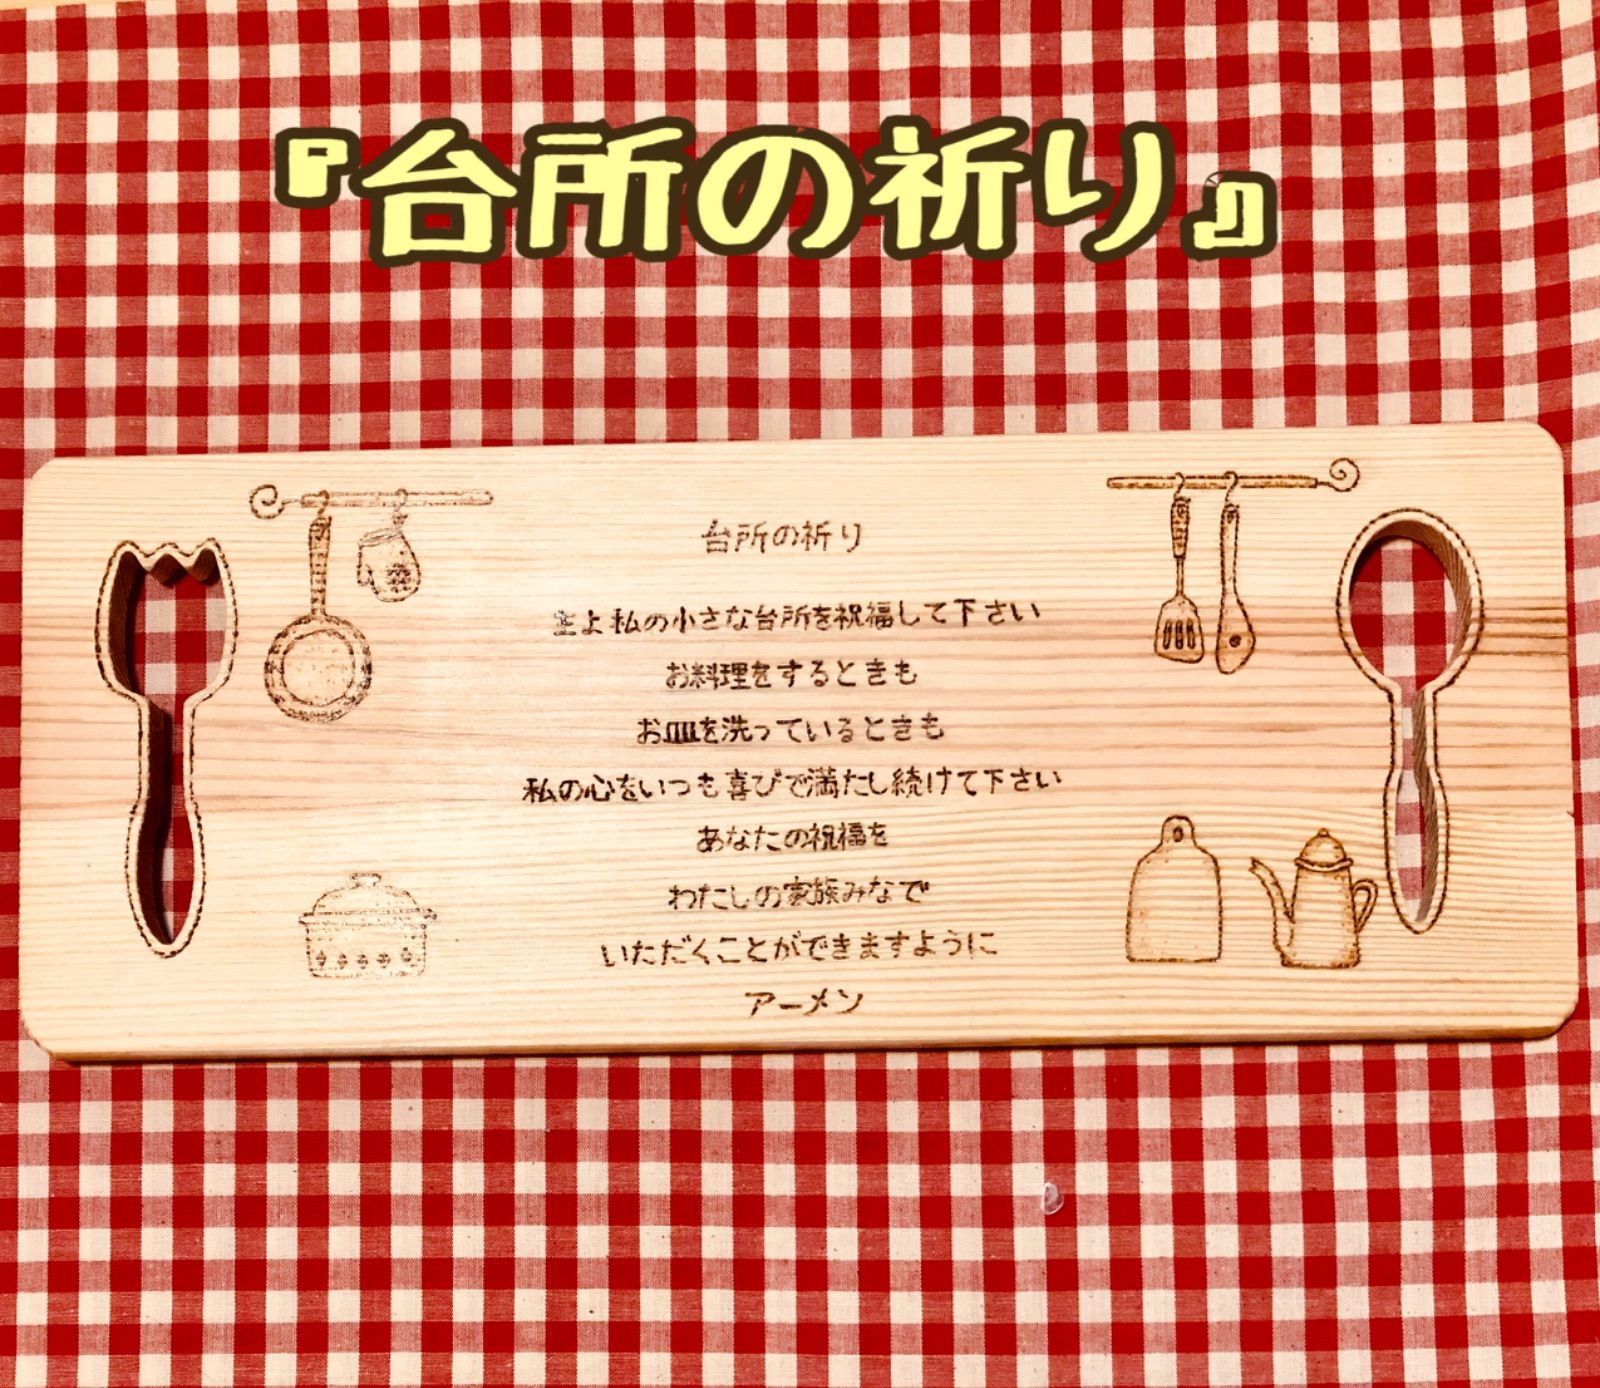 rococo様♡専用【台所の祈り・カッティングボード】 - メルカリ